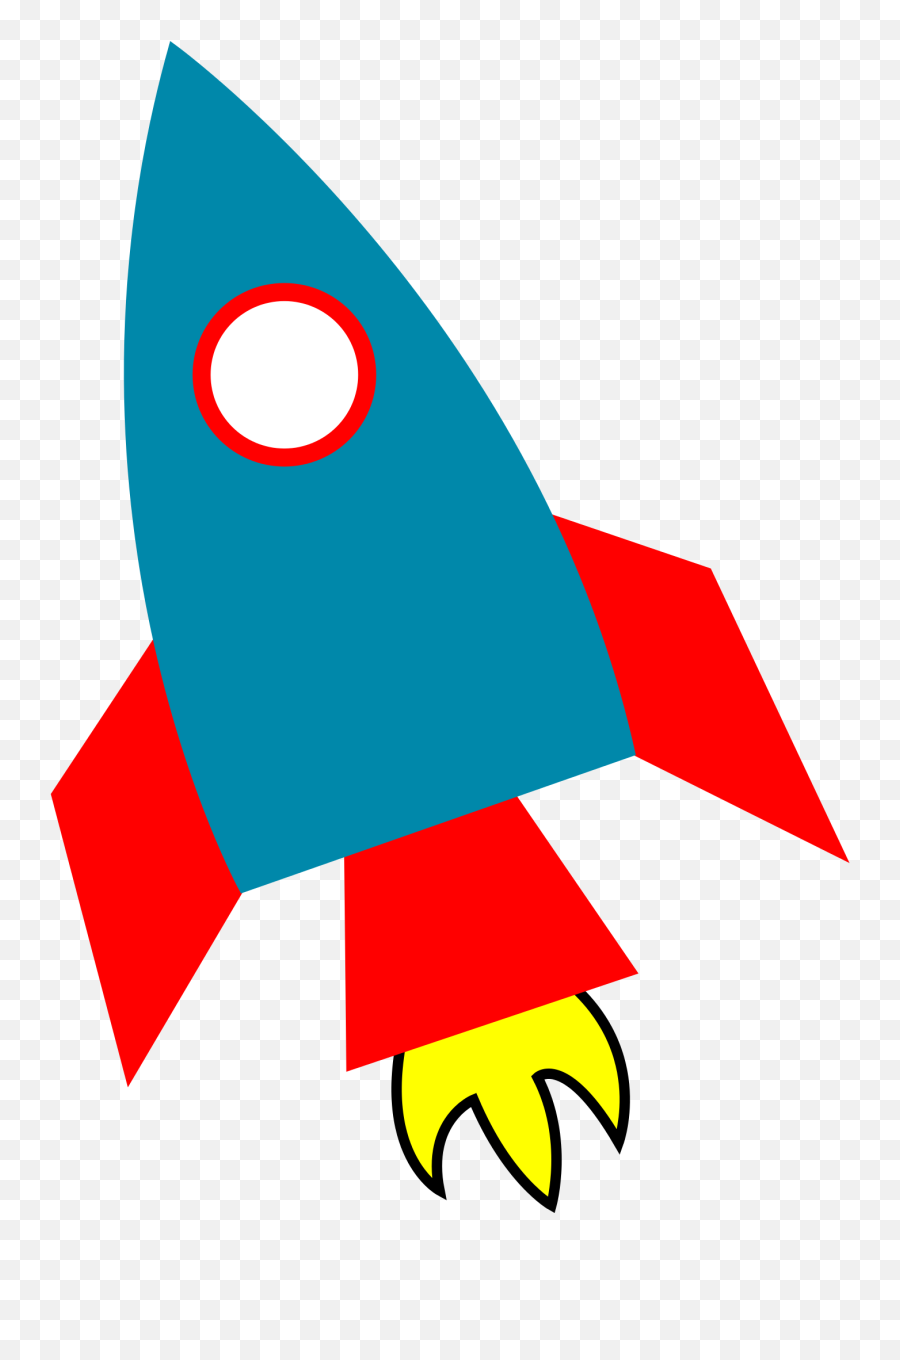 Rocket Clipart 4 - Rocket Picture For Kids Emoji,Rocket Ship Emoji